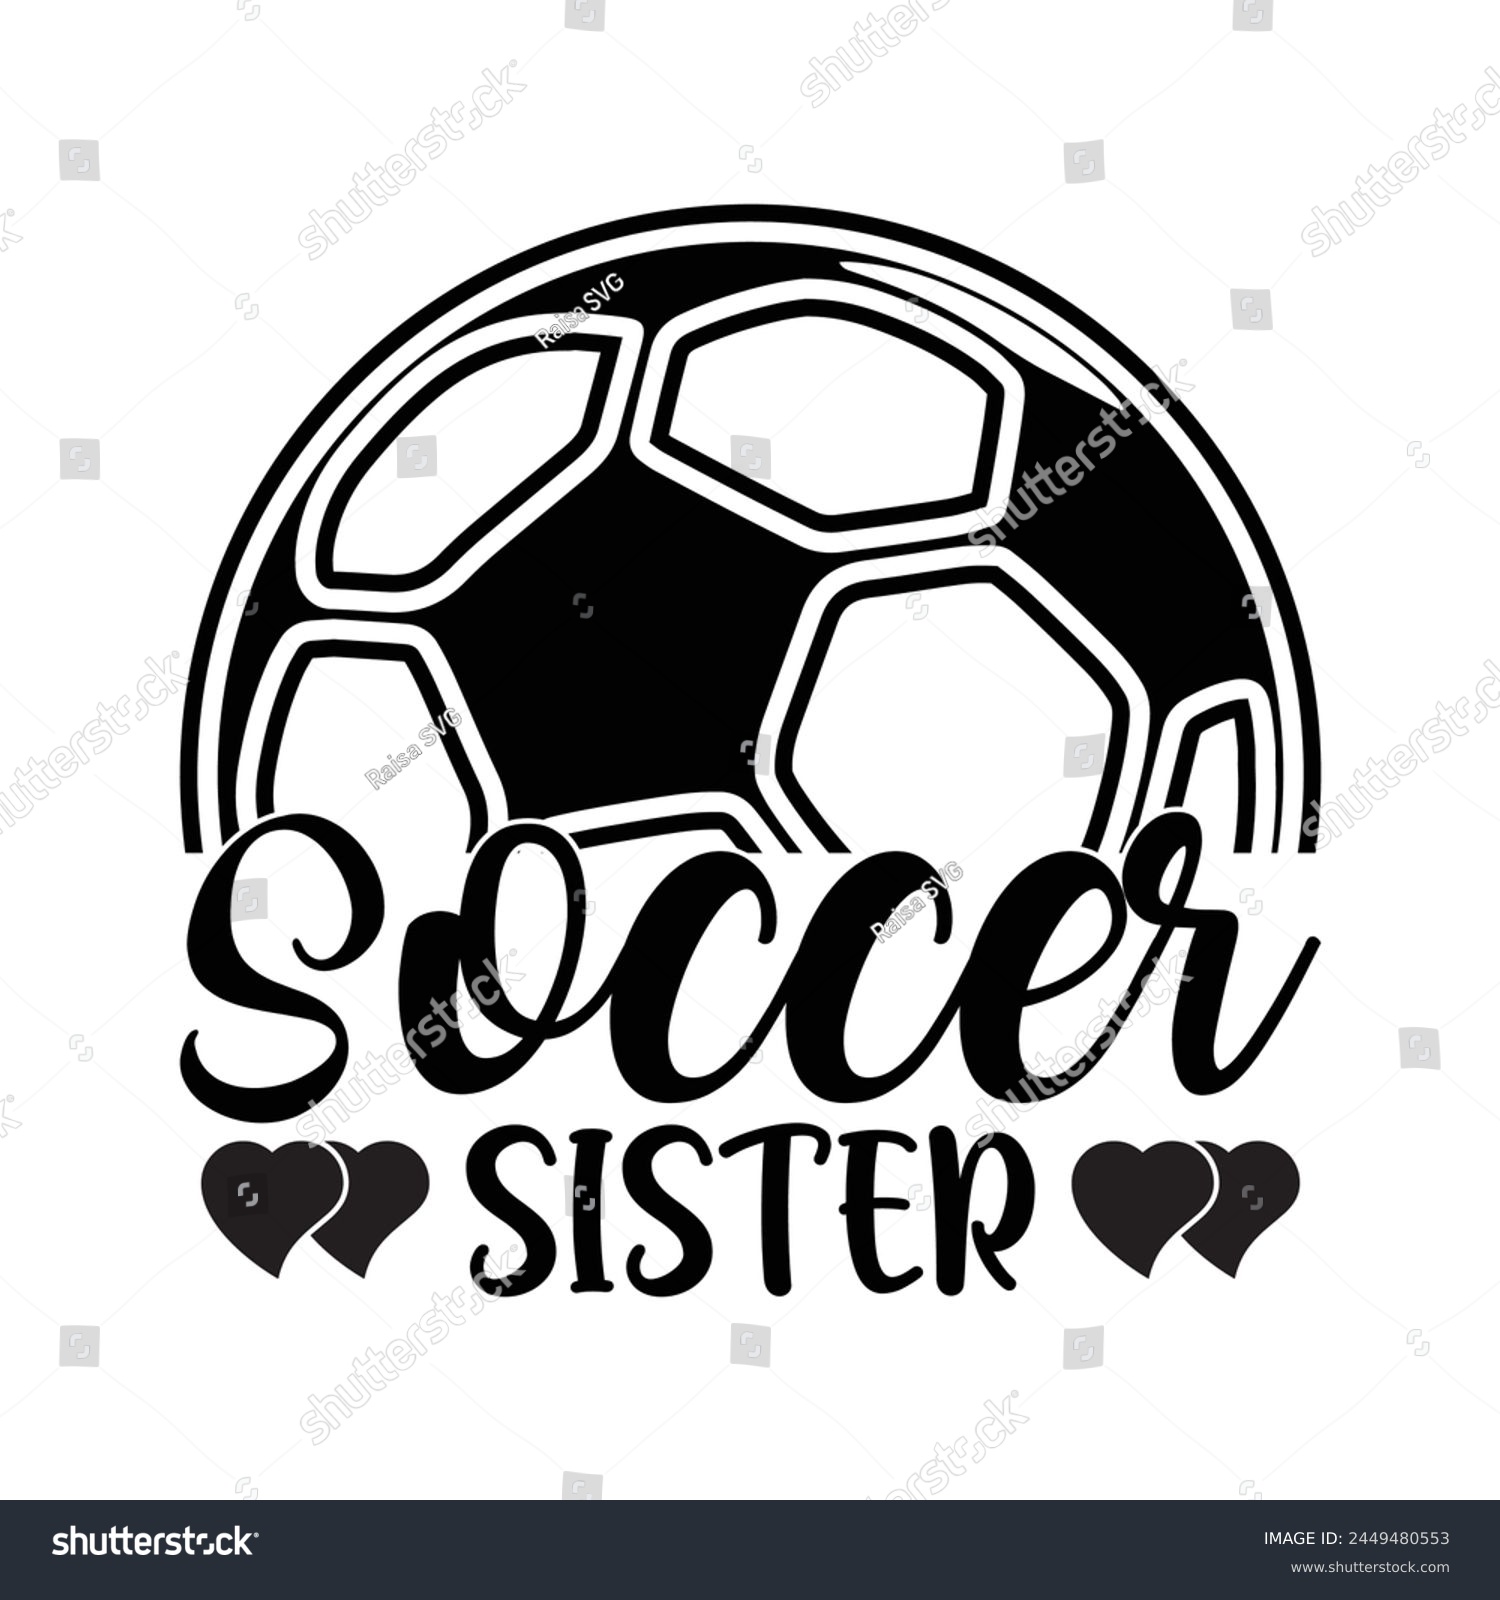 SVG of soccer sister T shirt design  svg